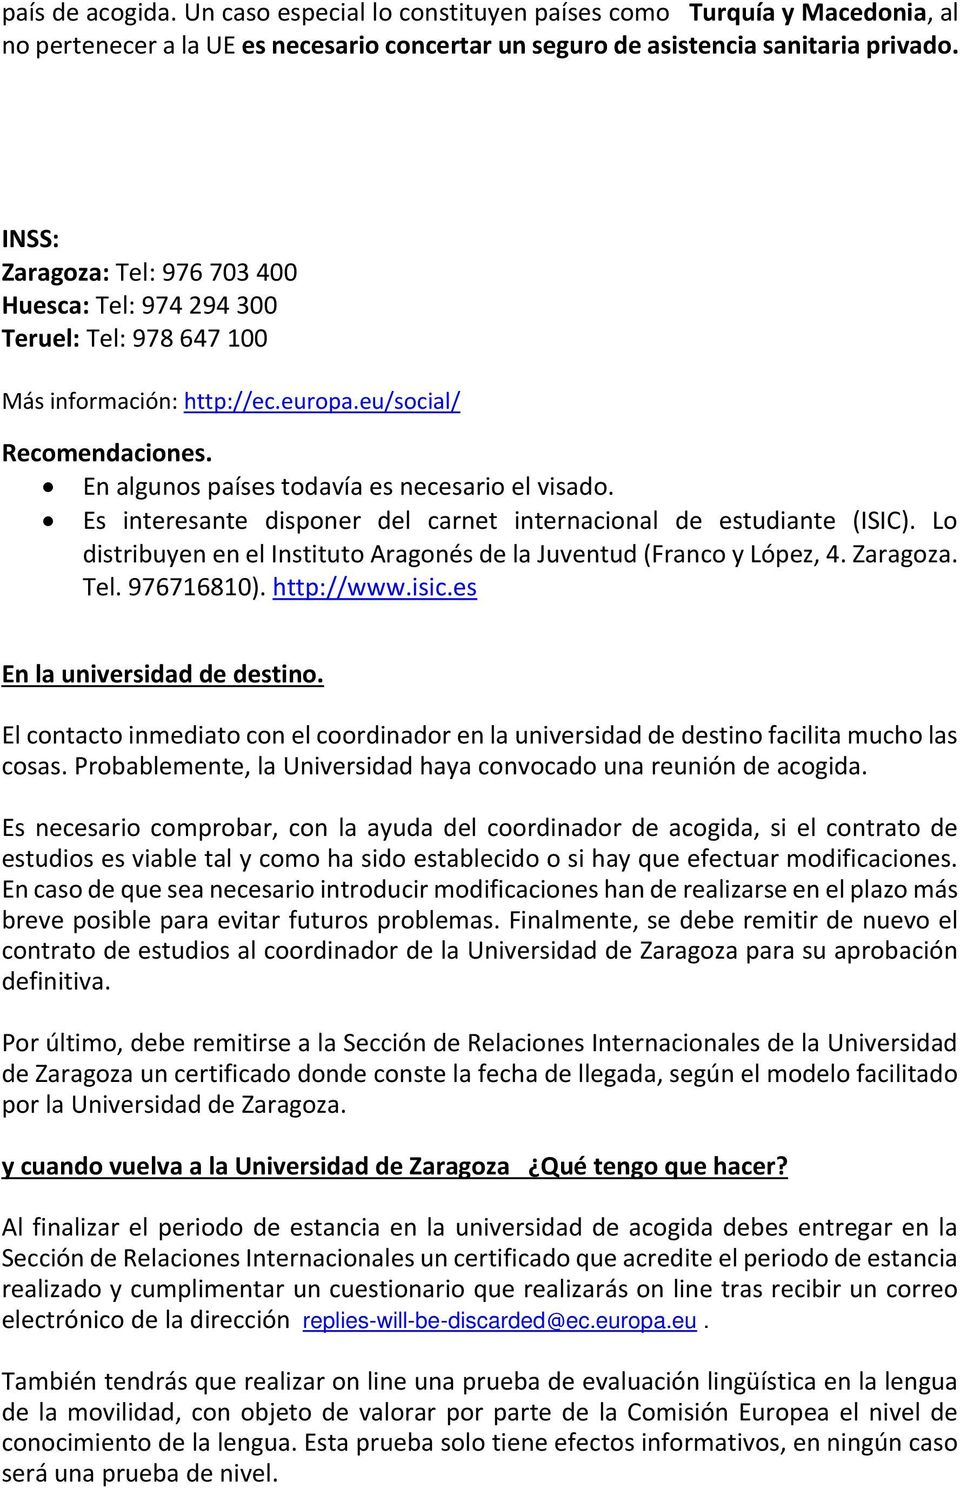 Es interesante disponer del carnet internacional de estudiante (ISIC). Lo distribuyen en el Instituto Aragonés de la Juventud (Franco y López, 4. Zaragoza. Tel. 976716810). http://www.isic.